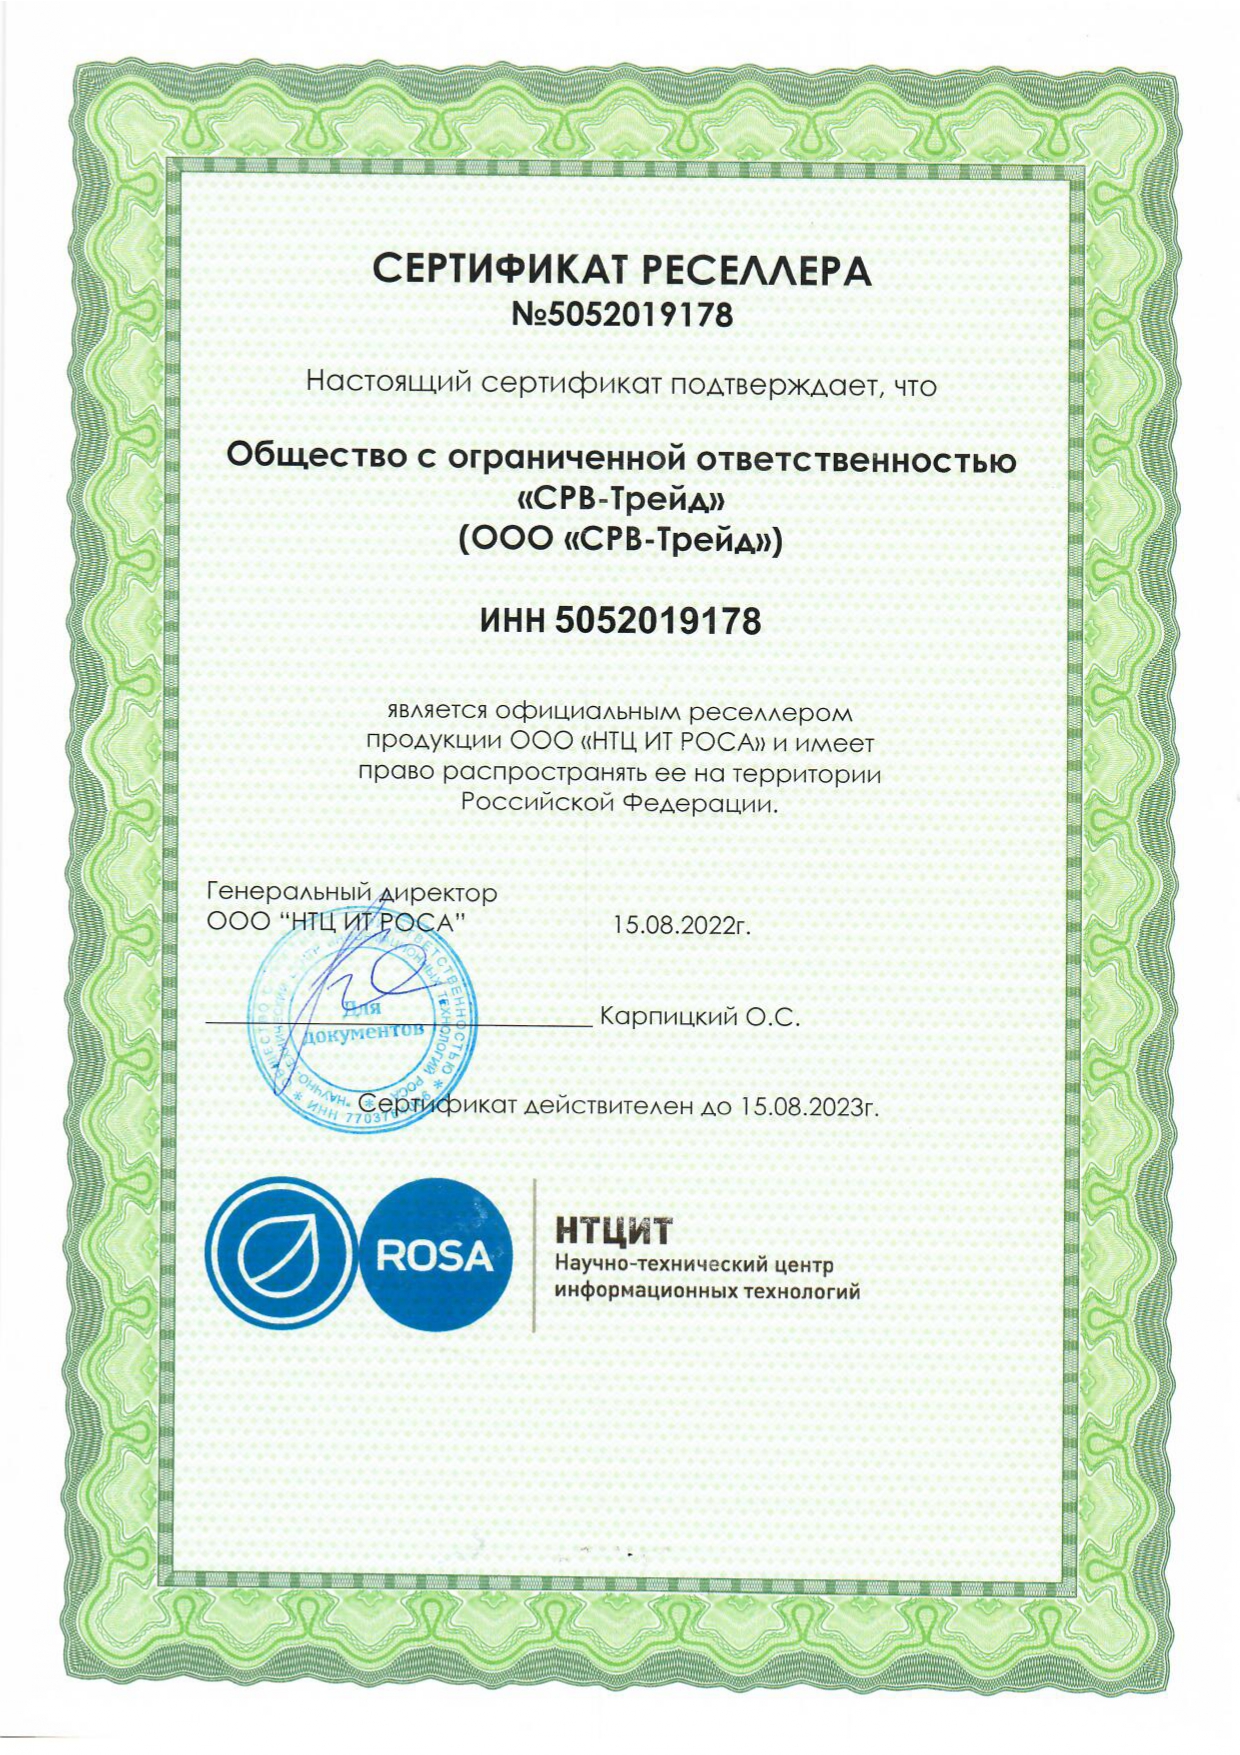 Сертификат партнера ROSA